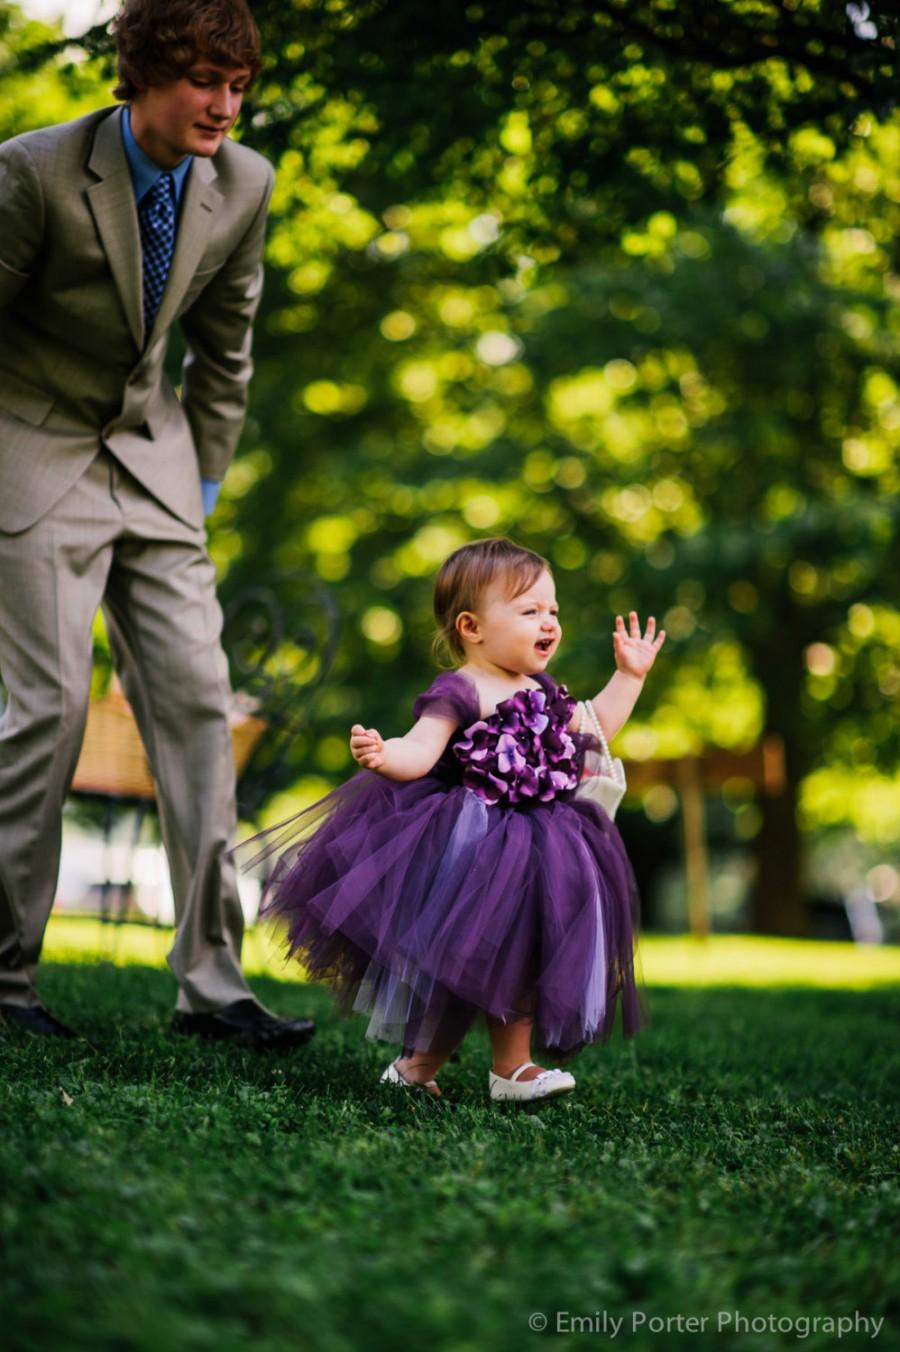 زفاف - Flower girl dress Deep Purple and Lavender tutu dress, flower top, hydrangea top, toddler tutu dress